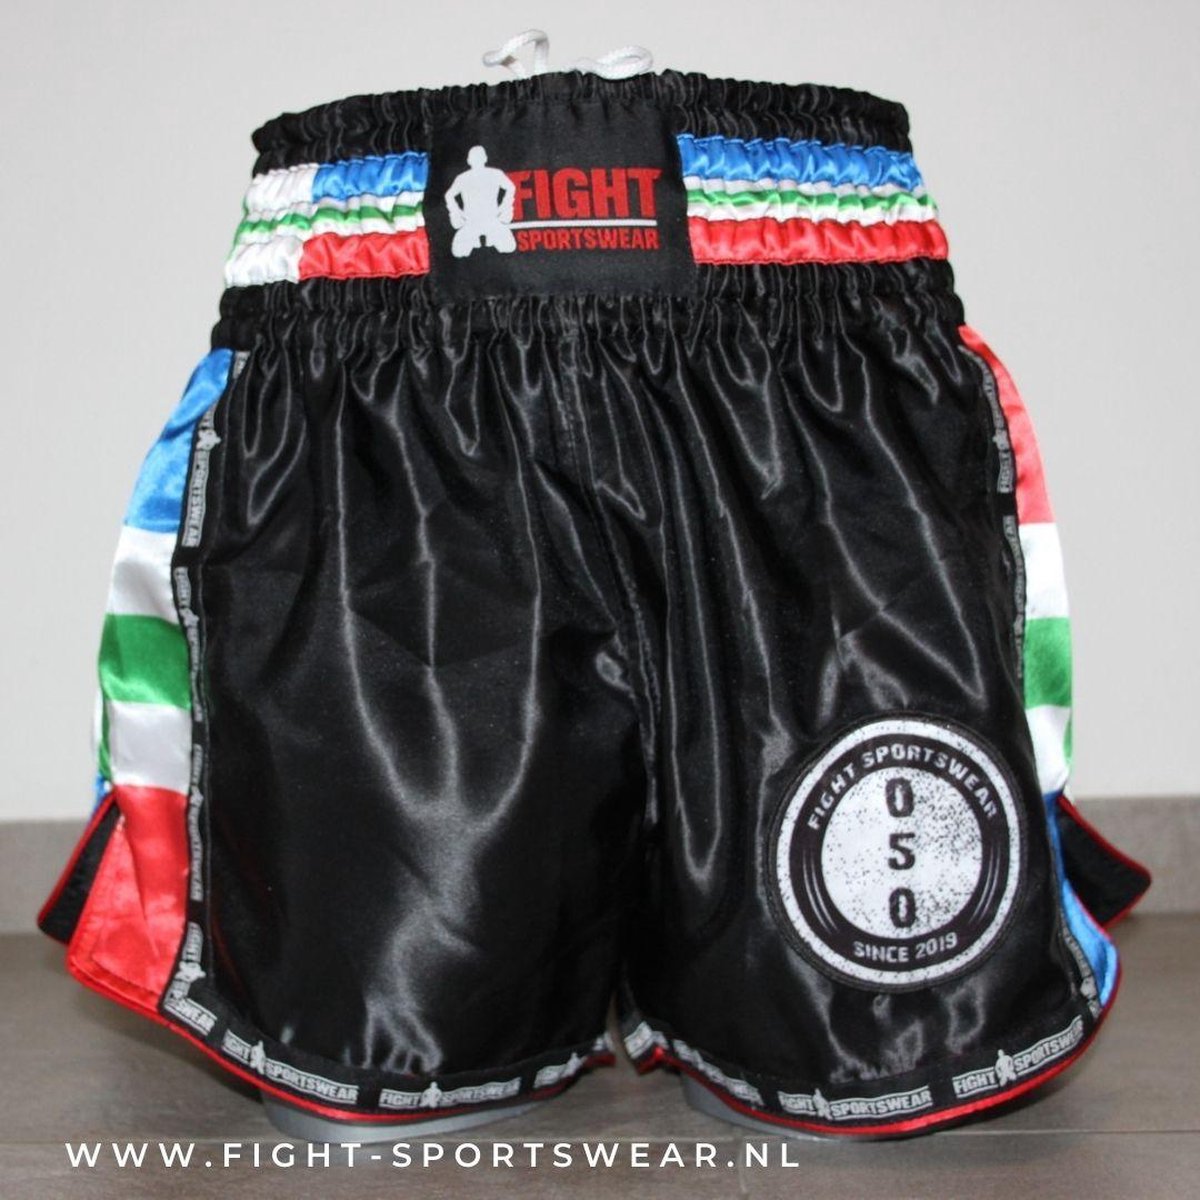 kickboks broekje Groningse vlag fight-sportswear S